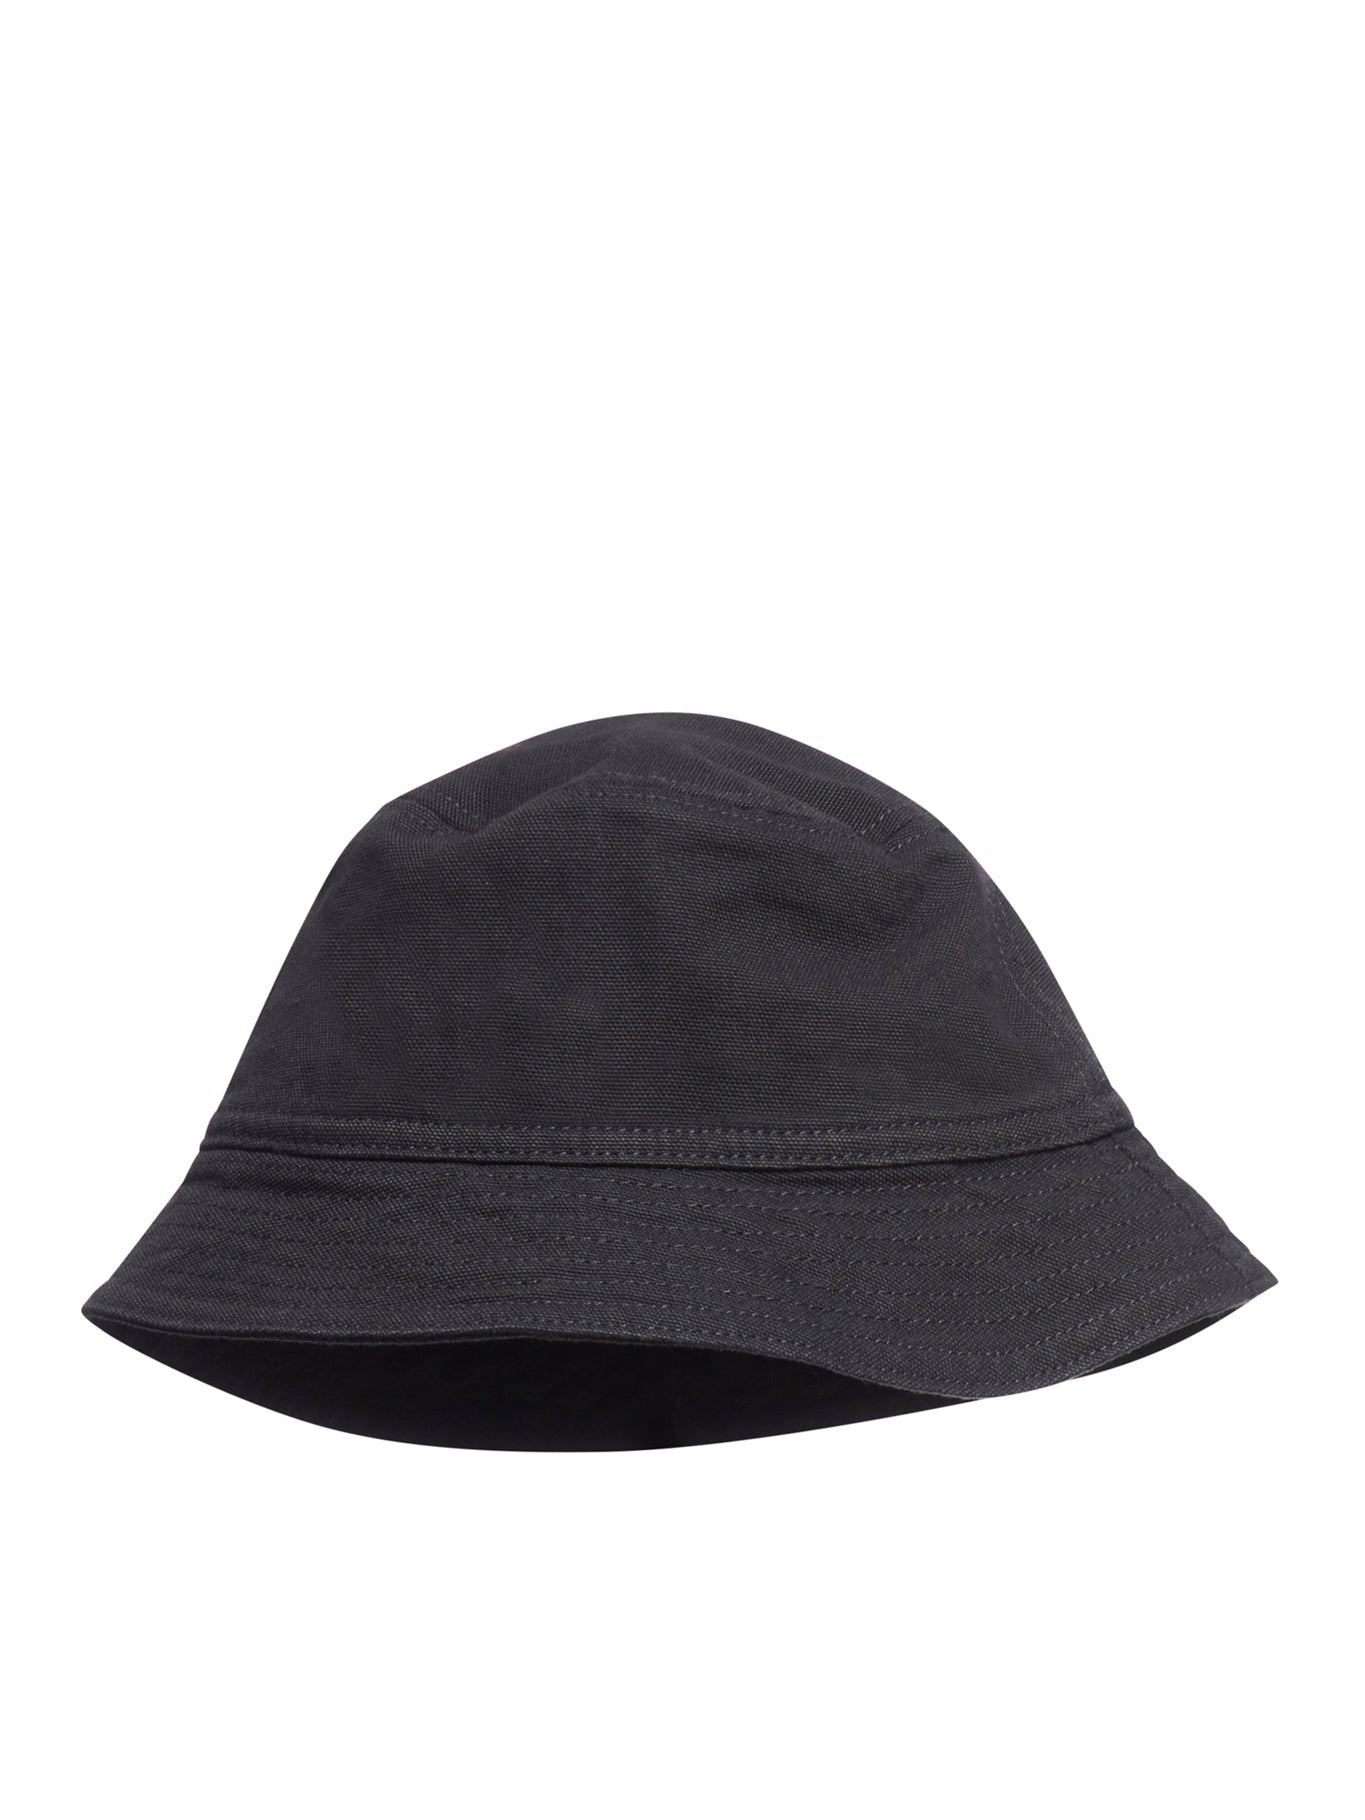 BAYFIELD bucket hat